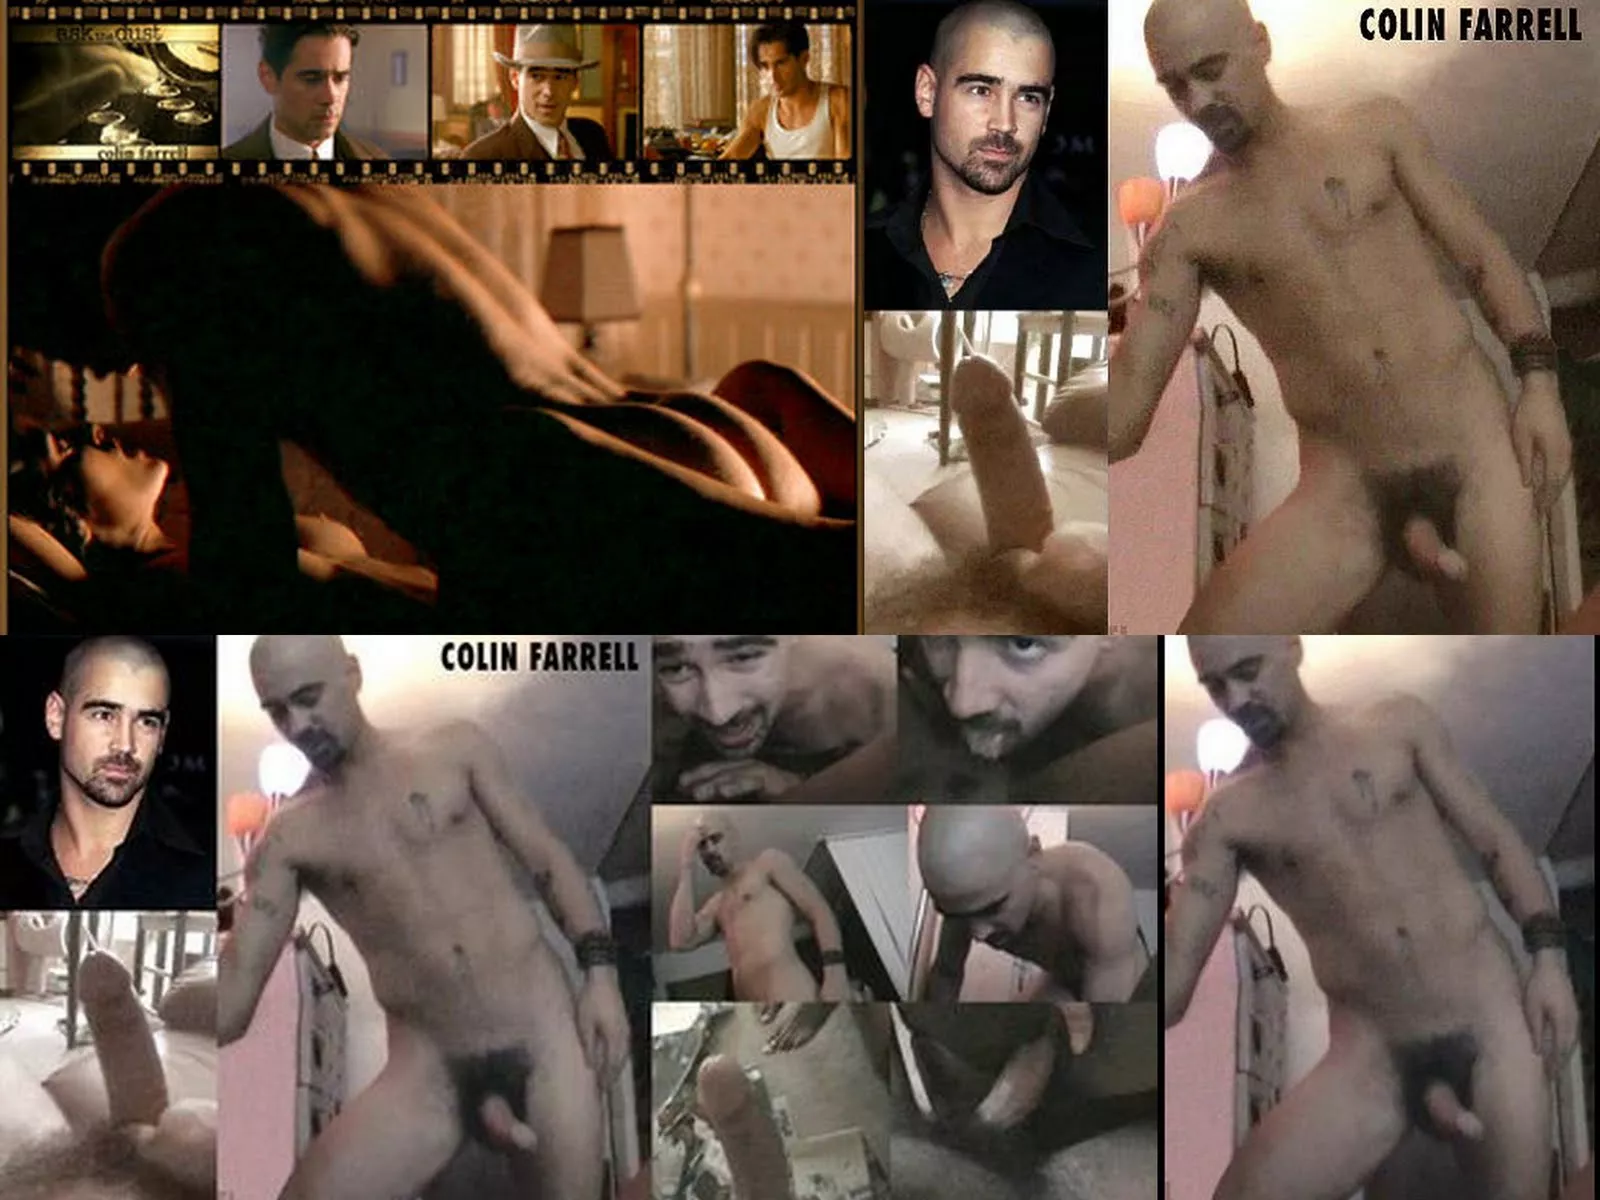 Colin farrell nude scene